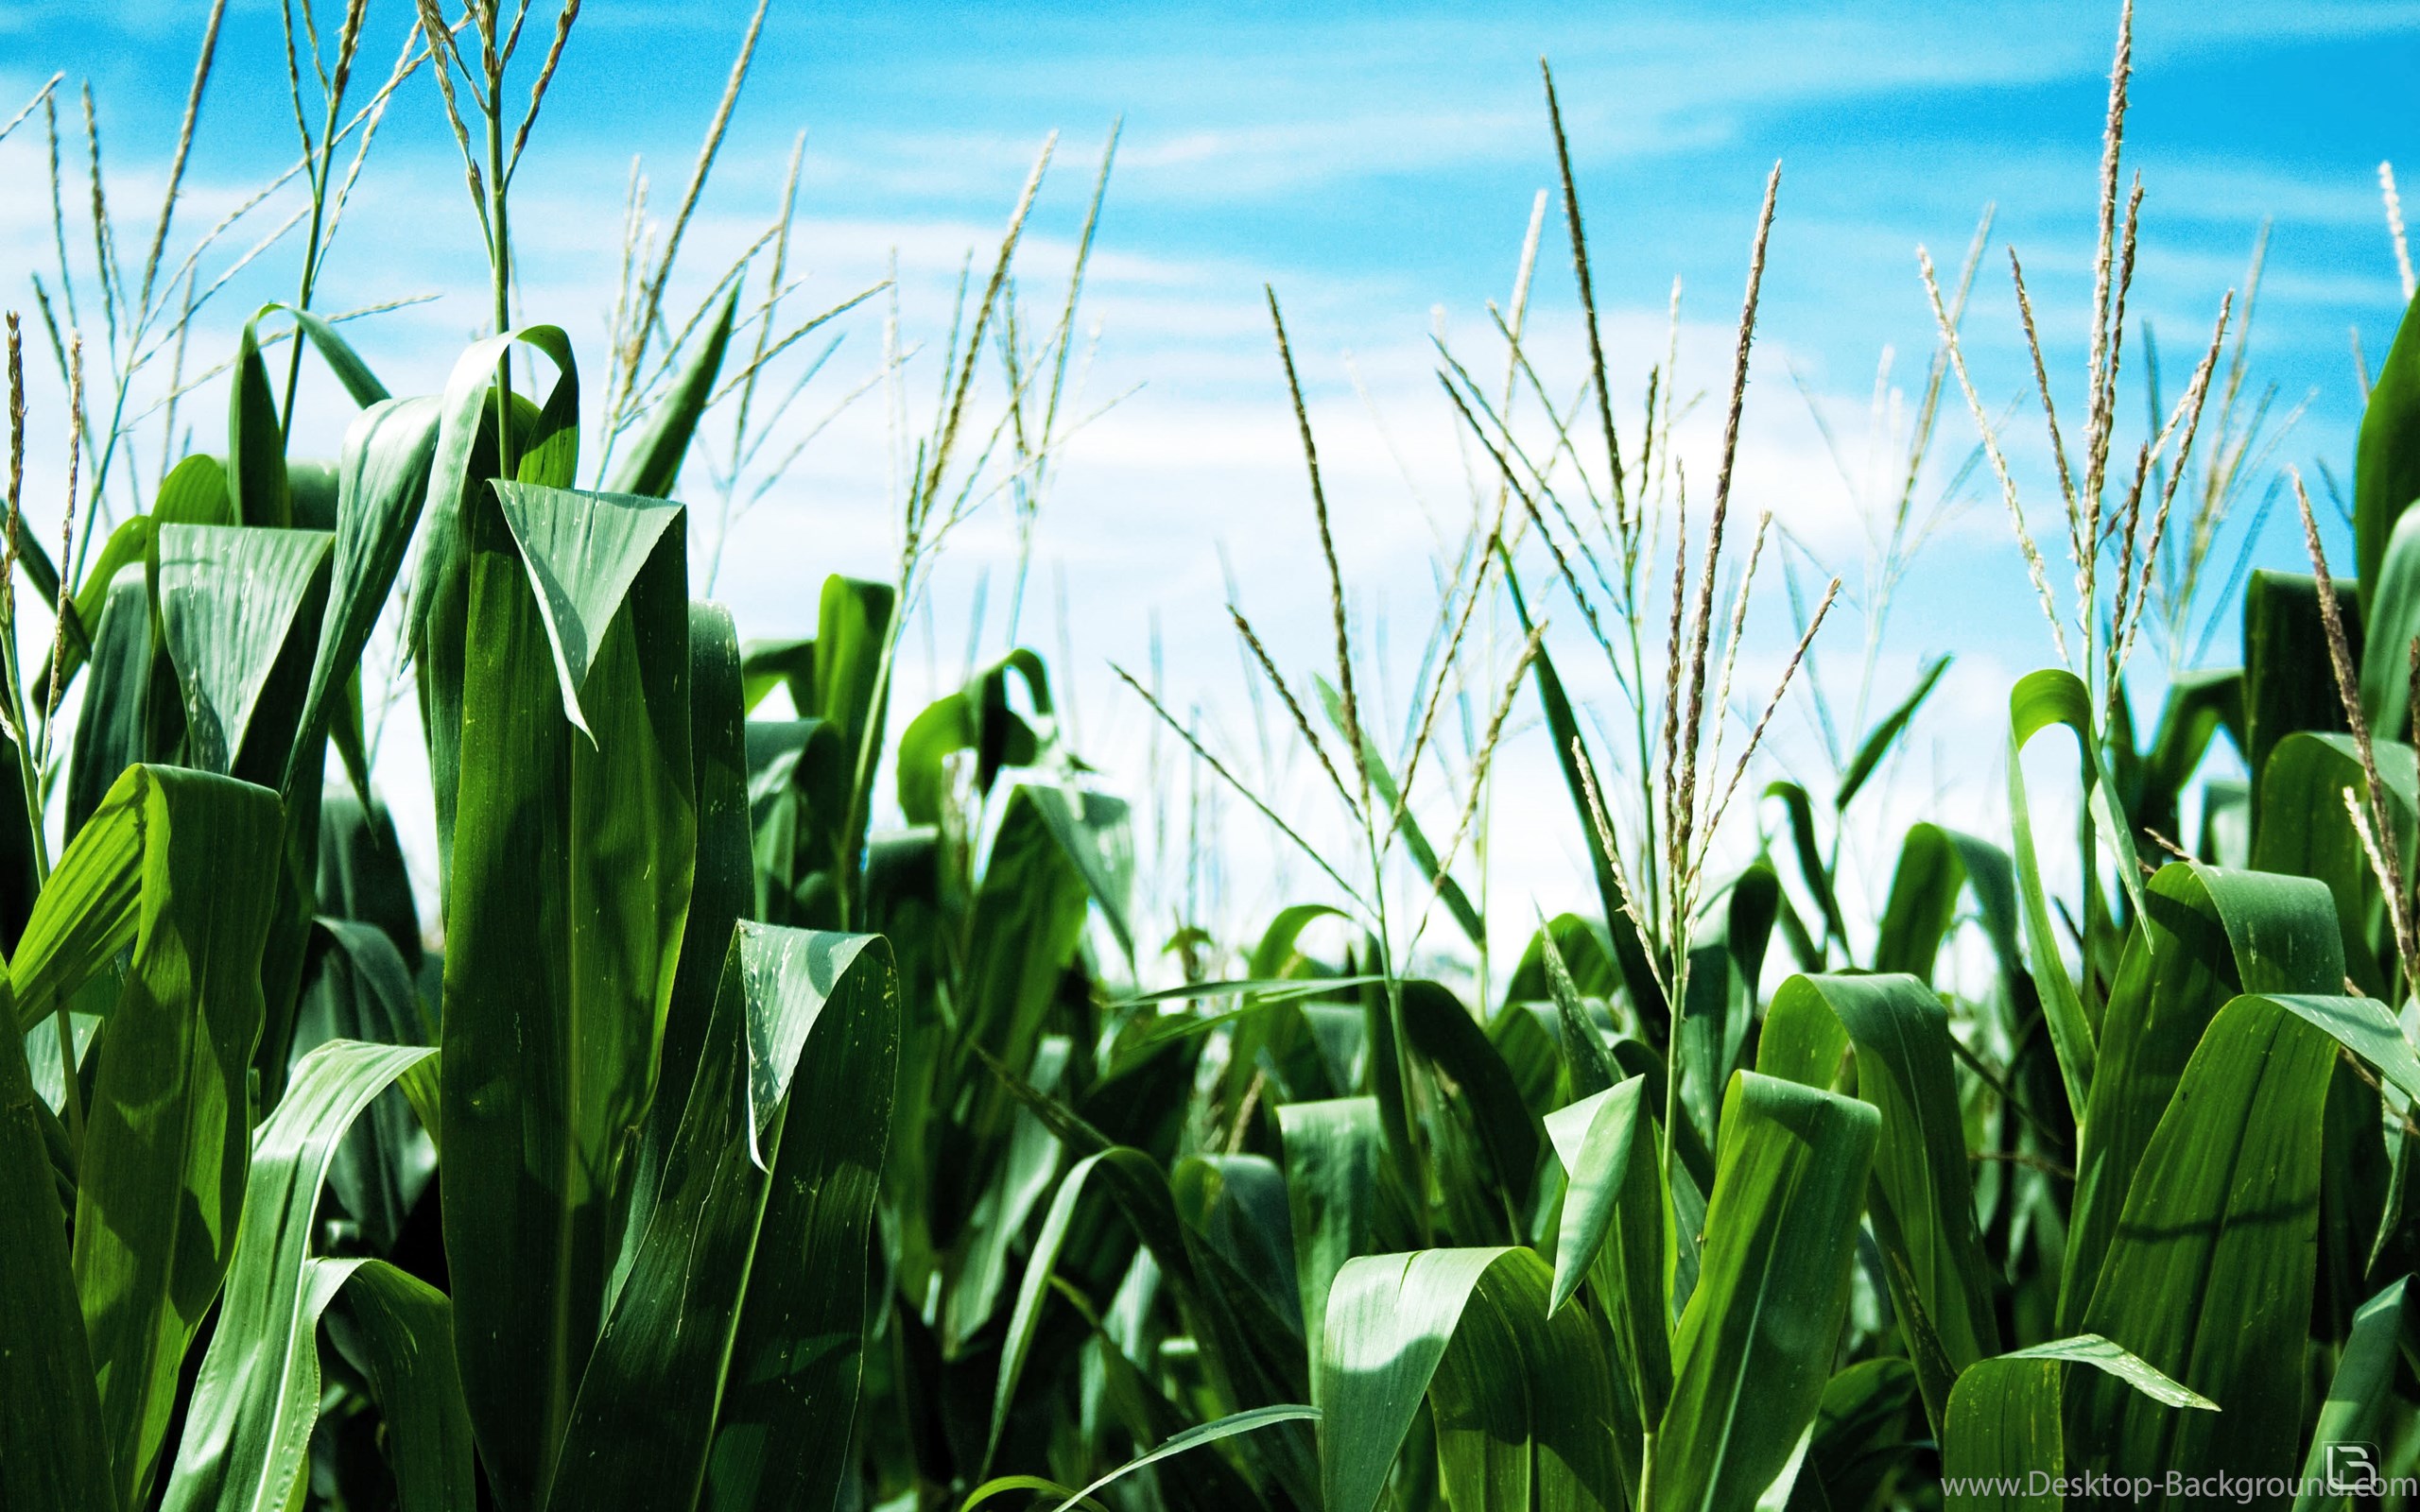 Widescreen - Corn Field , HD Wallpaper & Backgrounds